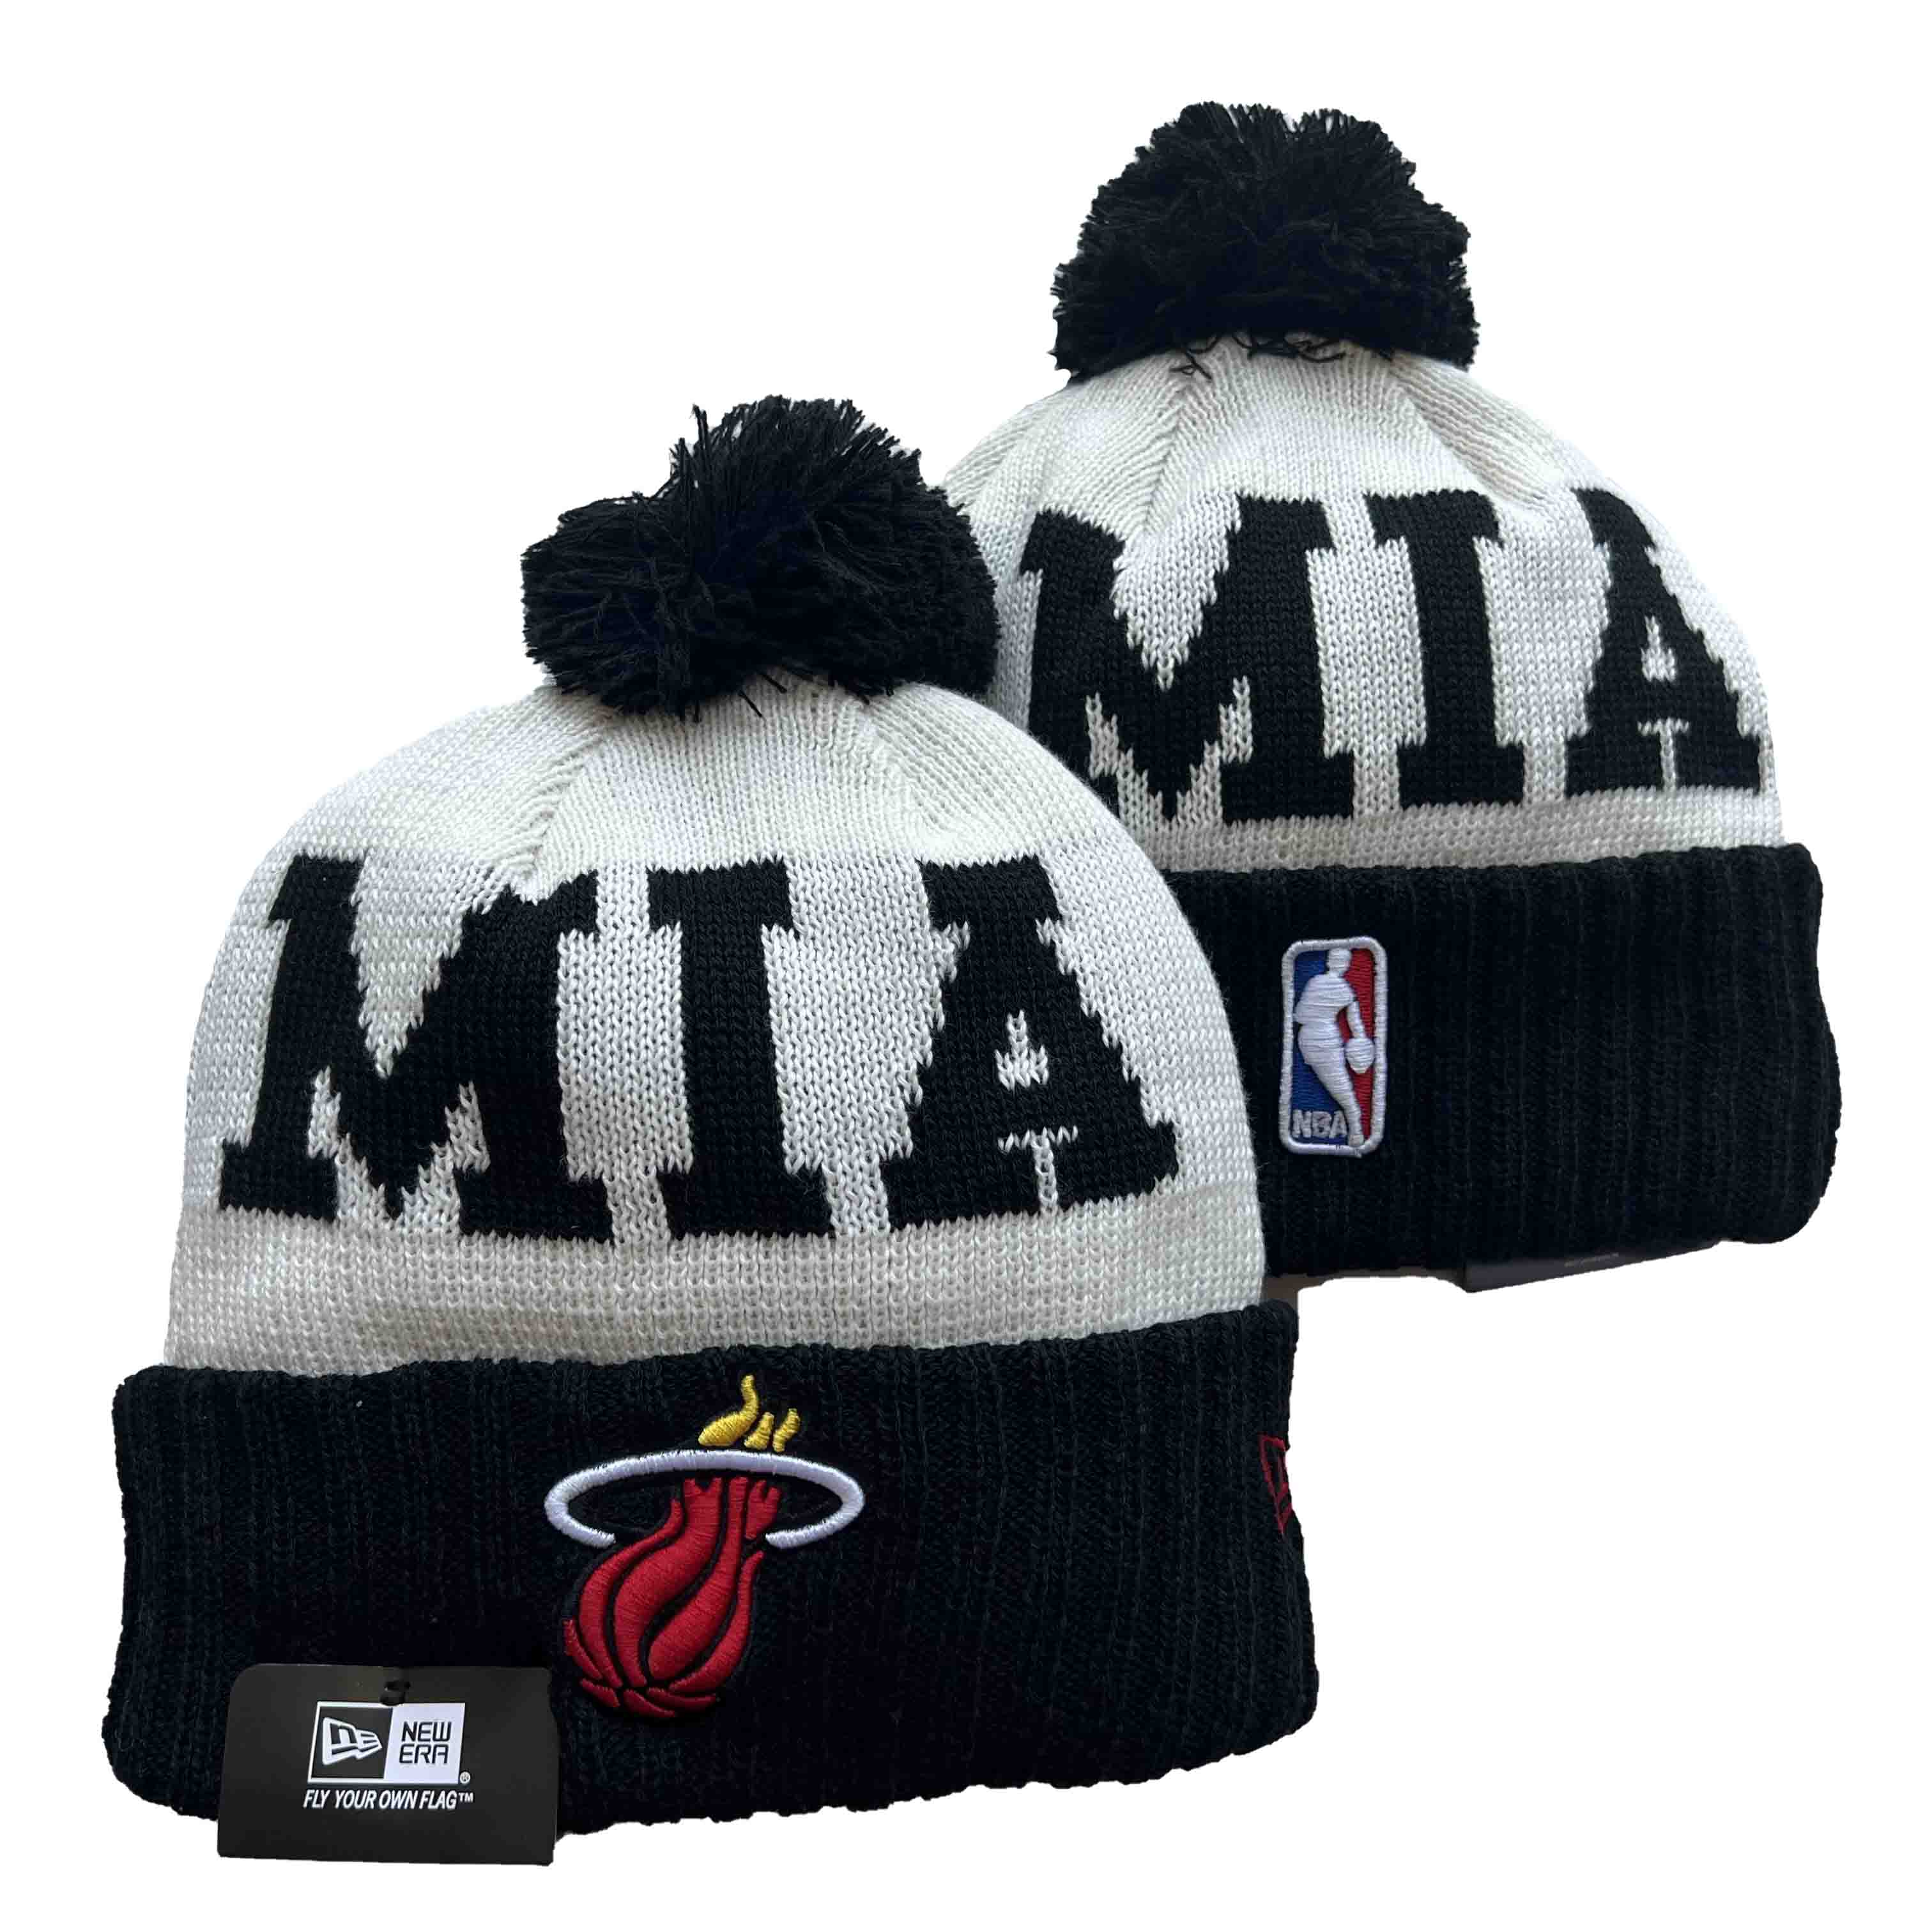 NBA Miami Heat Beanies Knit Hats-YD477